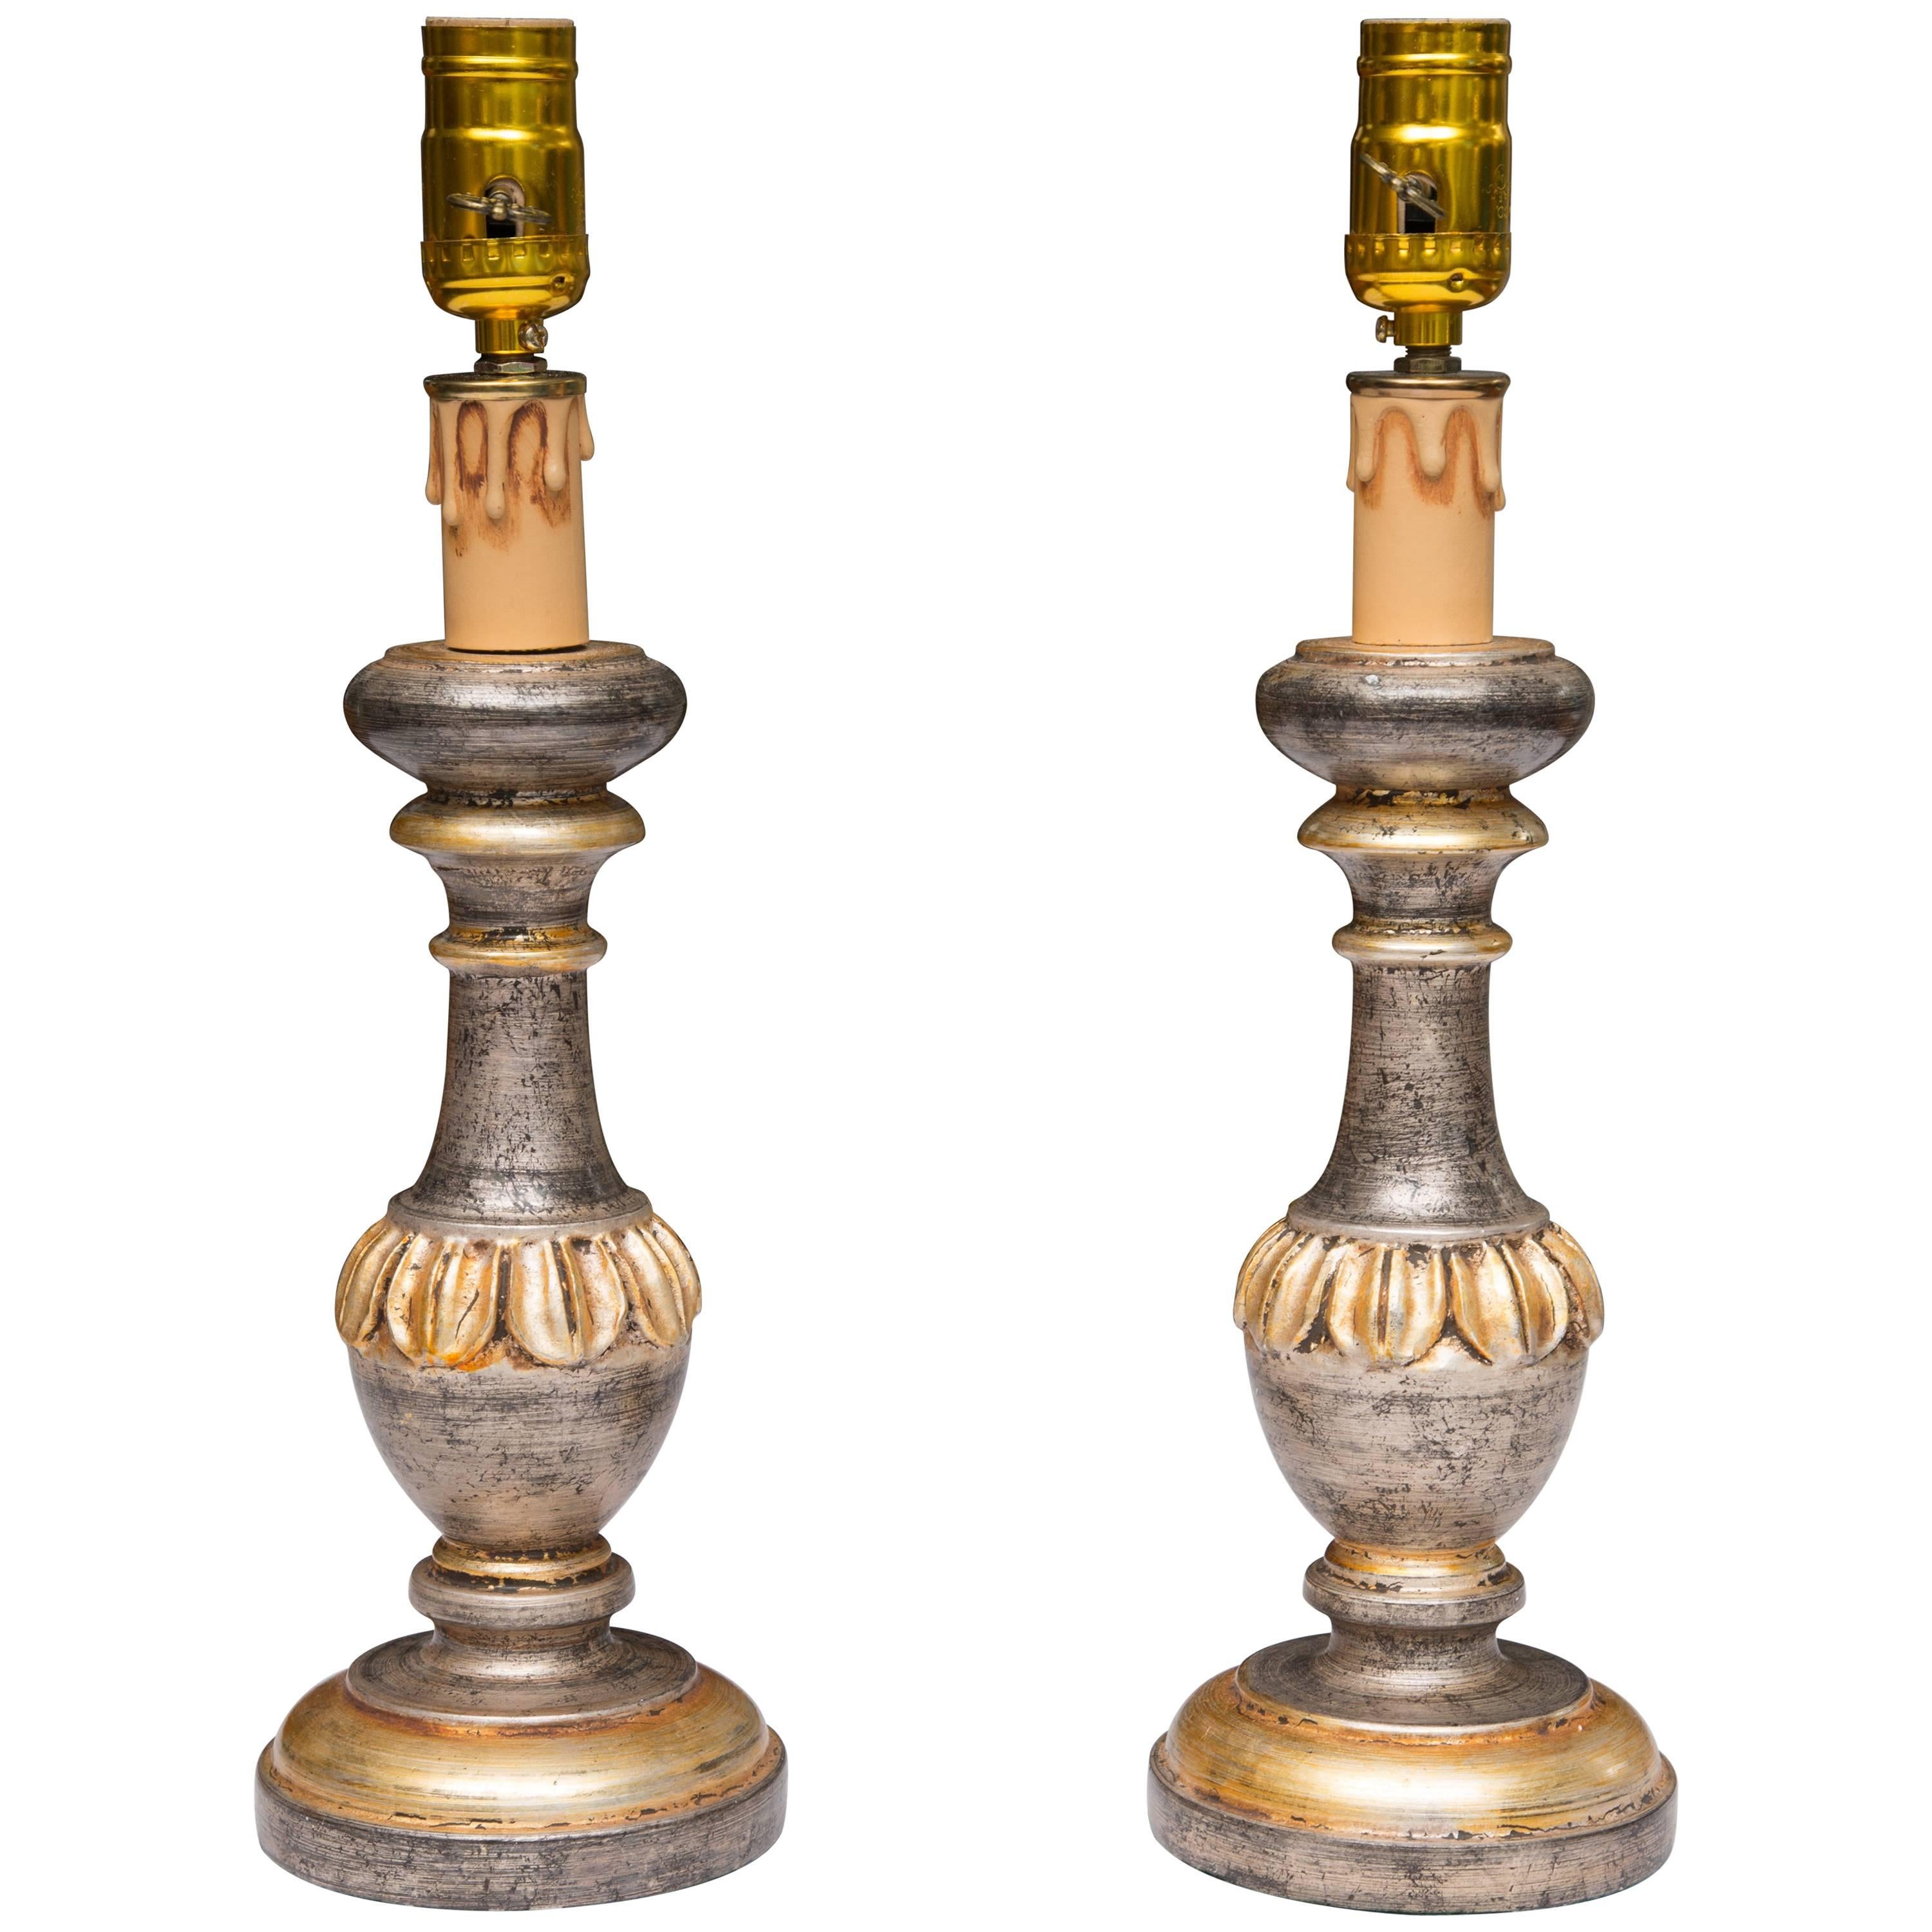 Paar vergoldete Silber- und teilweise vergoldete Kerzenständer als Lampen